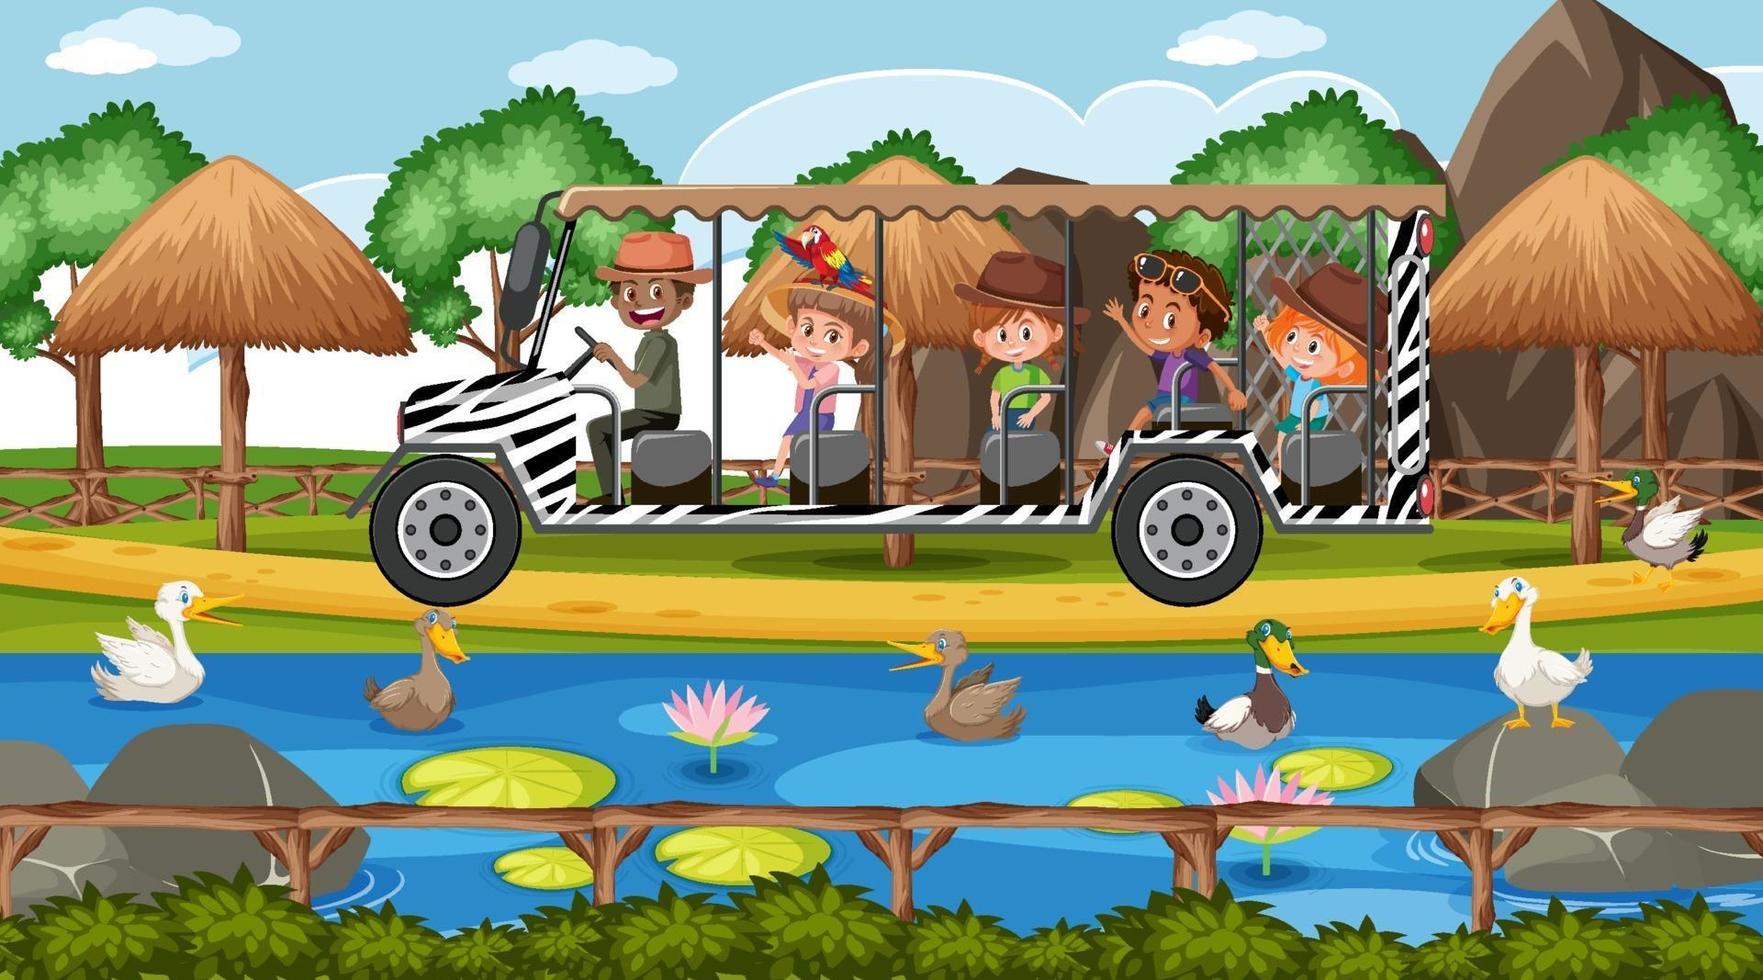 safari scène met kinderen op toeristenauto kijken naar eendengroep vector